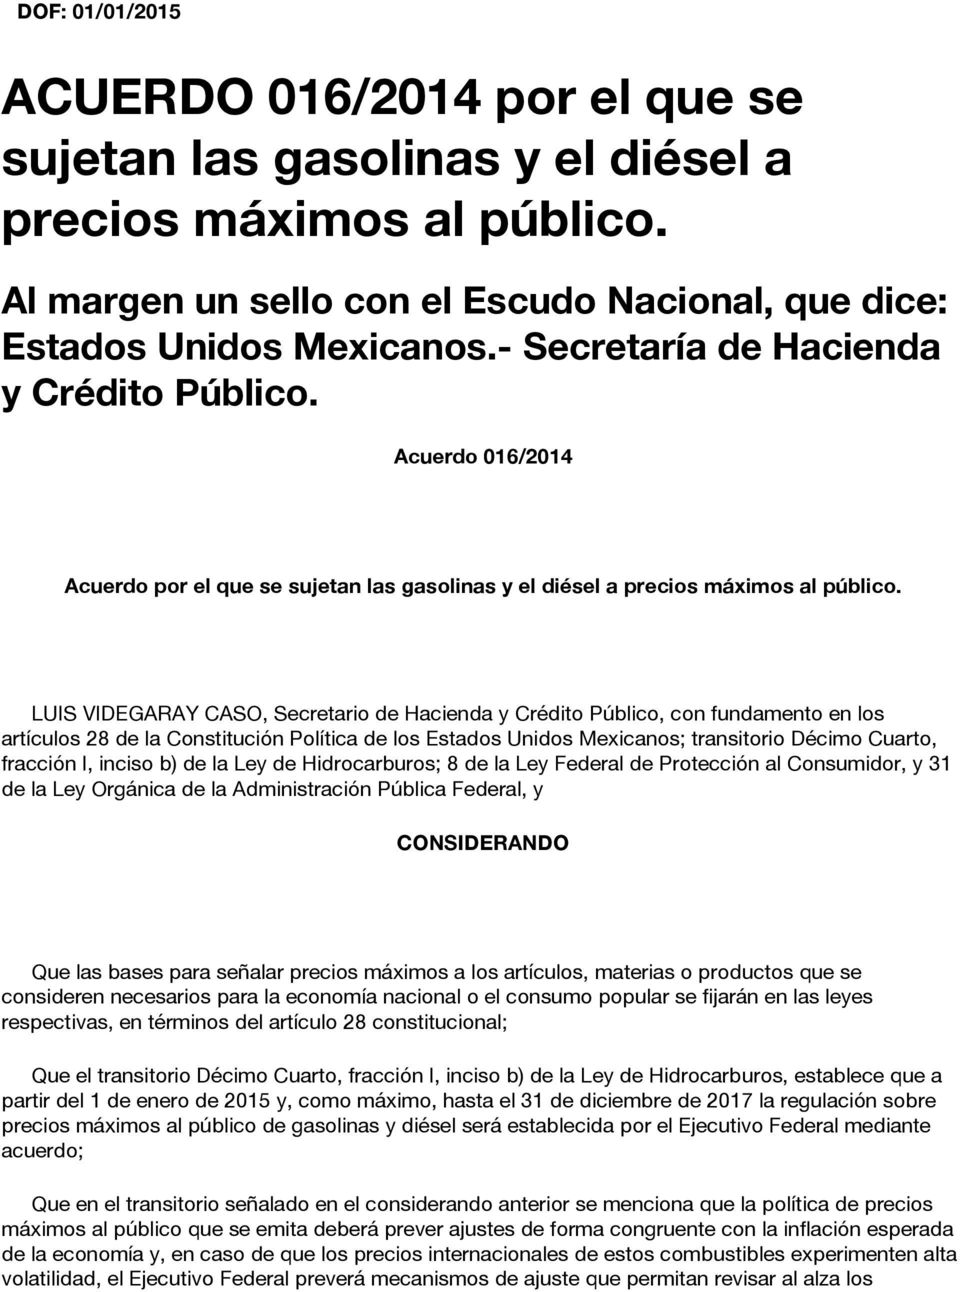 LUIS VIDEGARAY CASO, Secretario de Hacienda y Crédito Público, con fundamento en los artículos 28 de la Constitución Política de los Estados Unidos Mexicanos; transitorio Décimo Cuarto, fracción I,